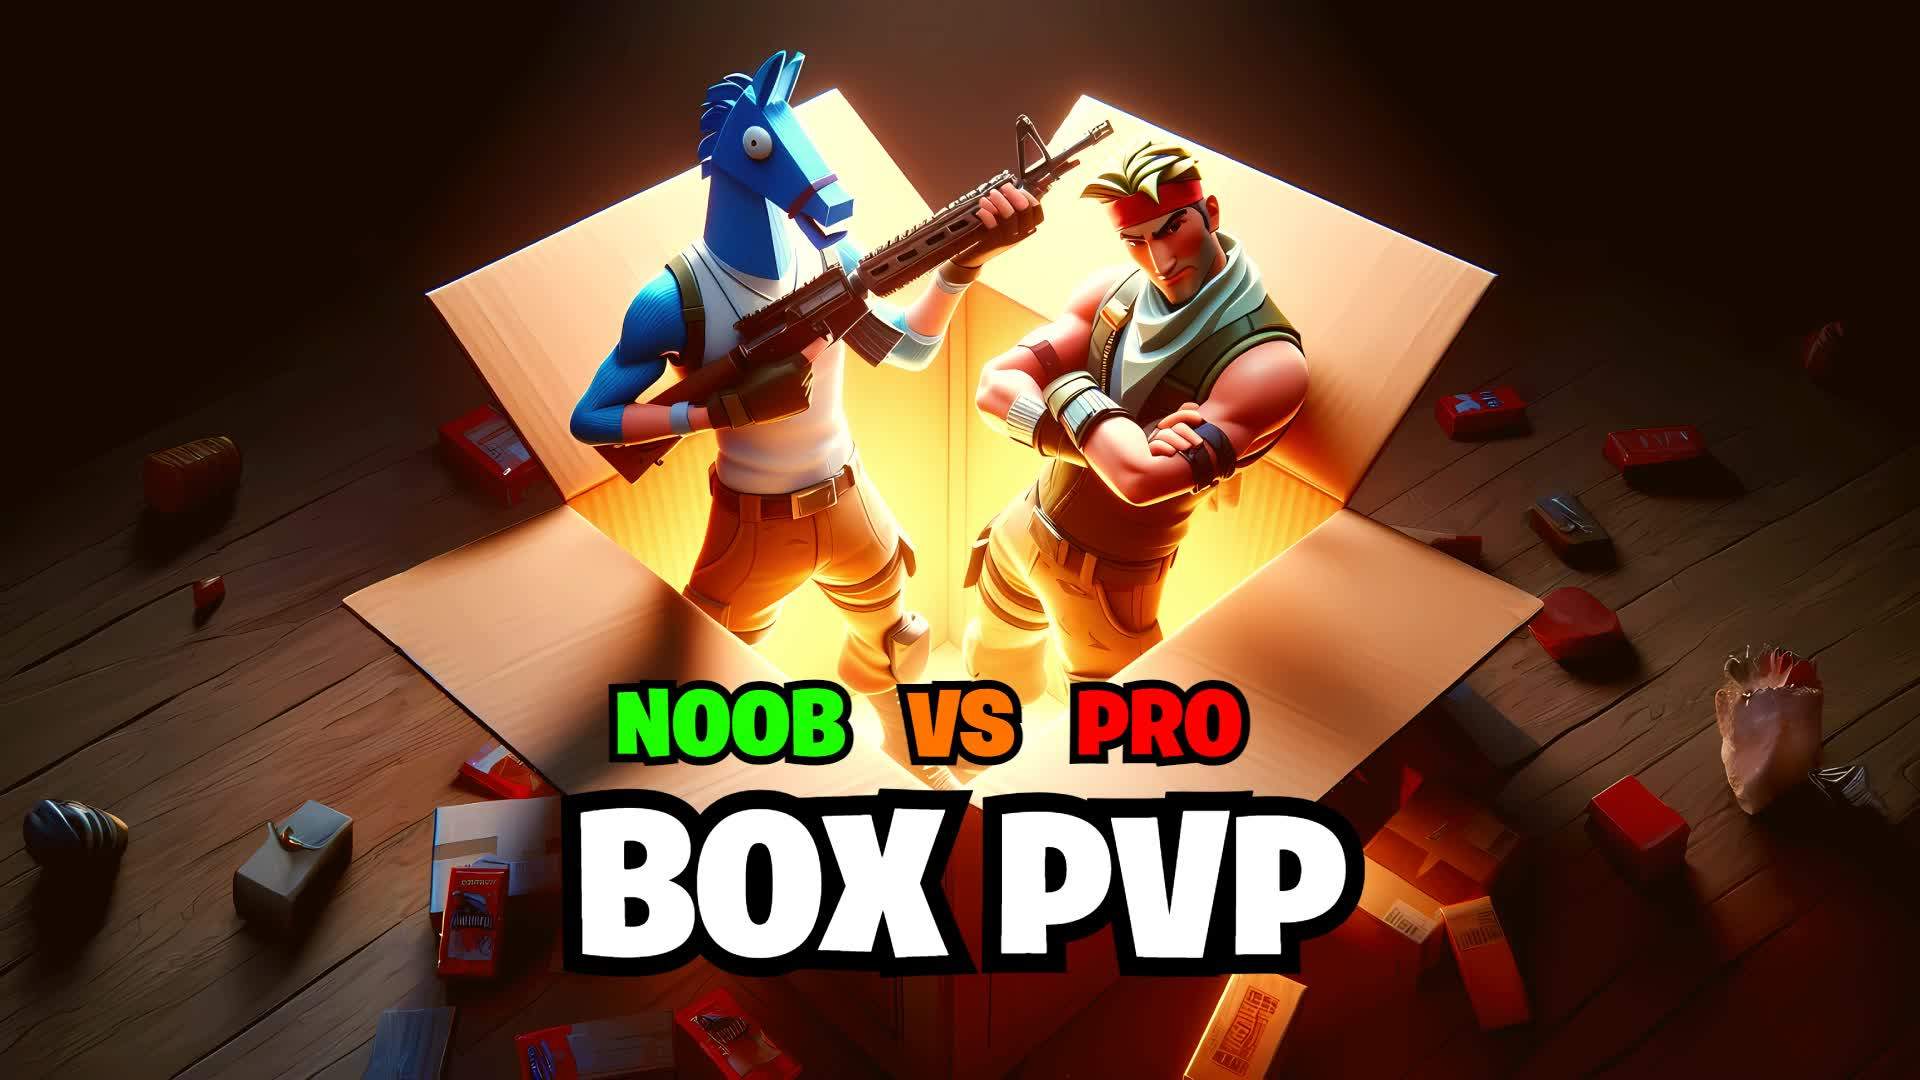 NOOB VS PRO BOX PVP